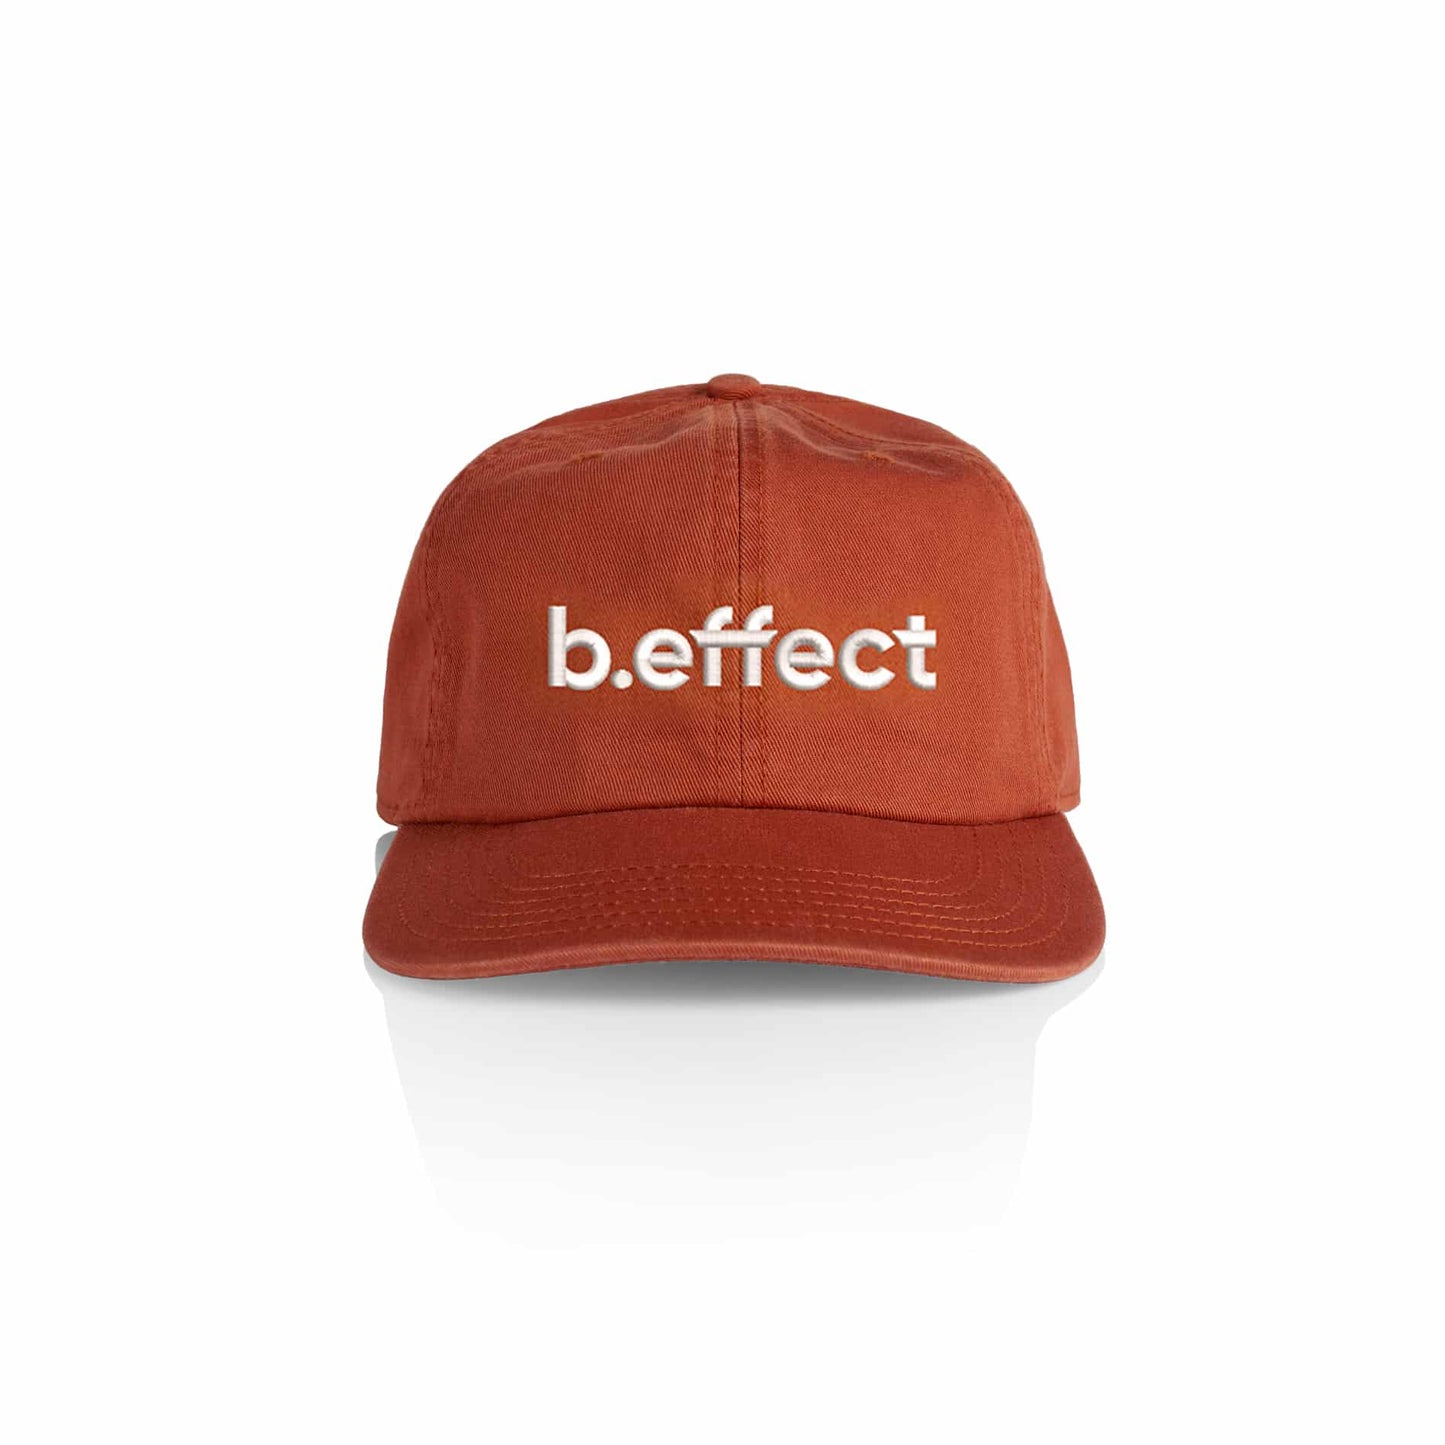 b.effect Cap - Copper